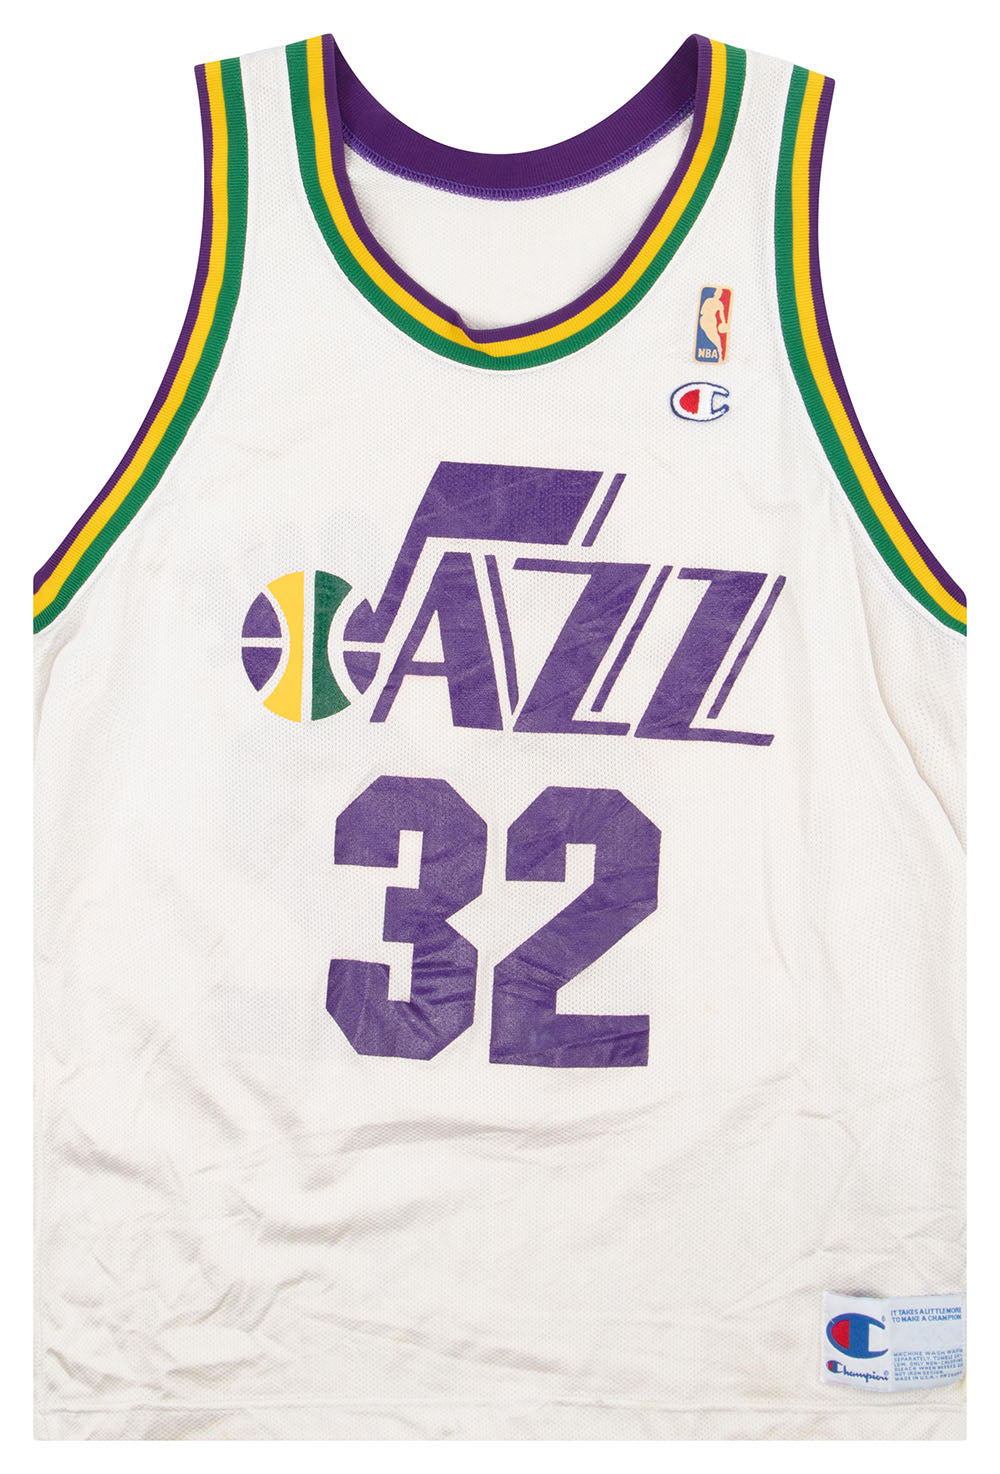 Utah Jazz toddler jersey